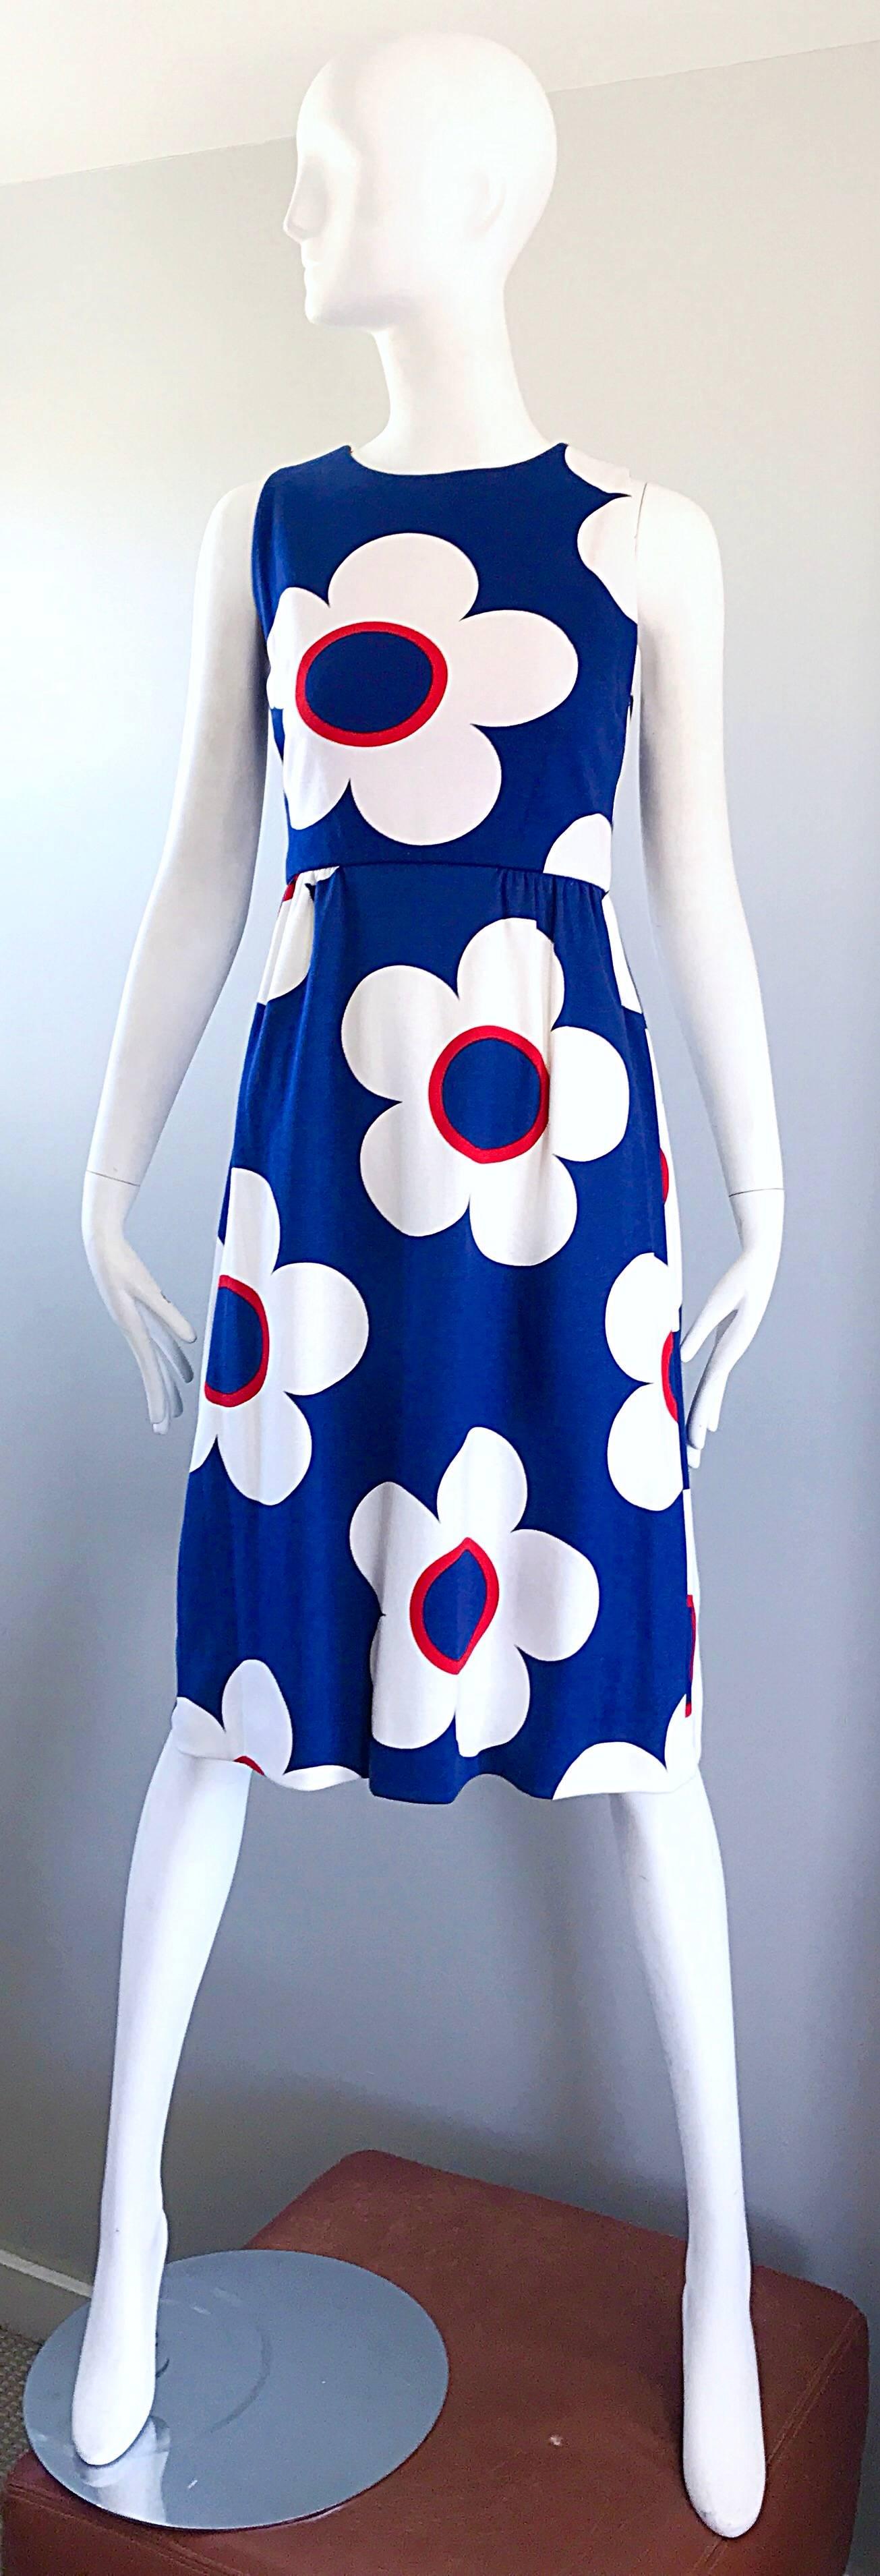 Sensationnelle robe demi-couture vintage bleu marine, rouge et blanc en coton et veste boléro à manches courtes ! Les deux pièces sont ornées de fleurs modulaires. Fermeture à glissière sarcelle complète dans le dos avec fermeture à crochets.